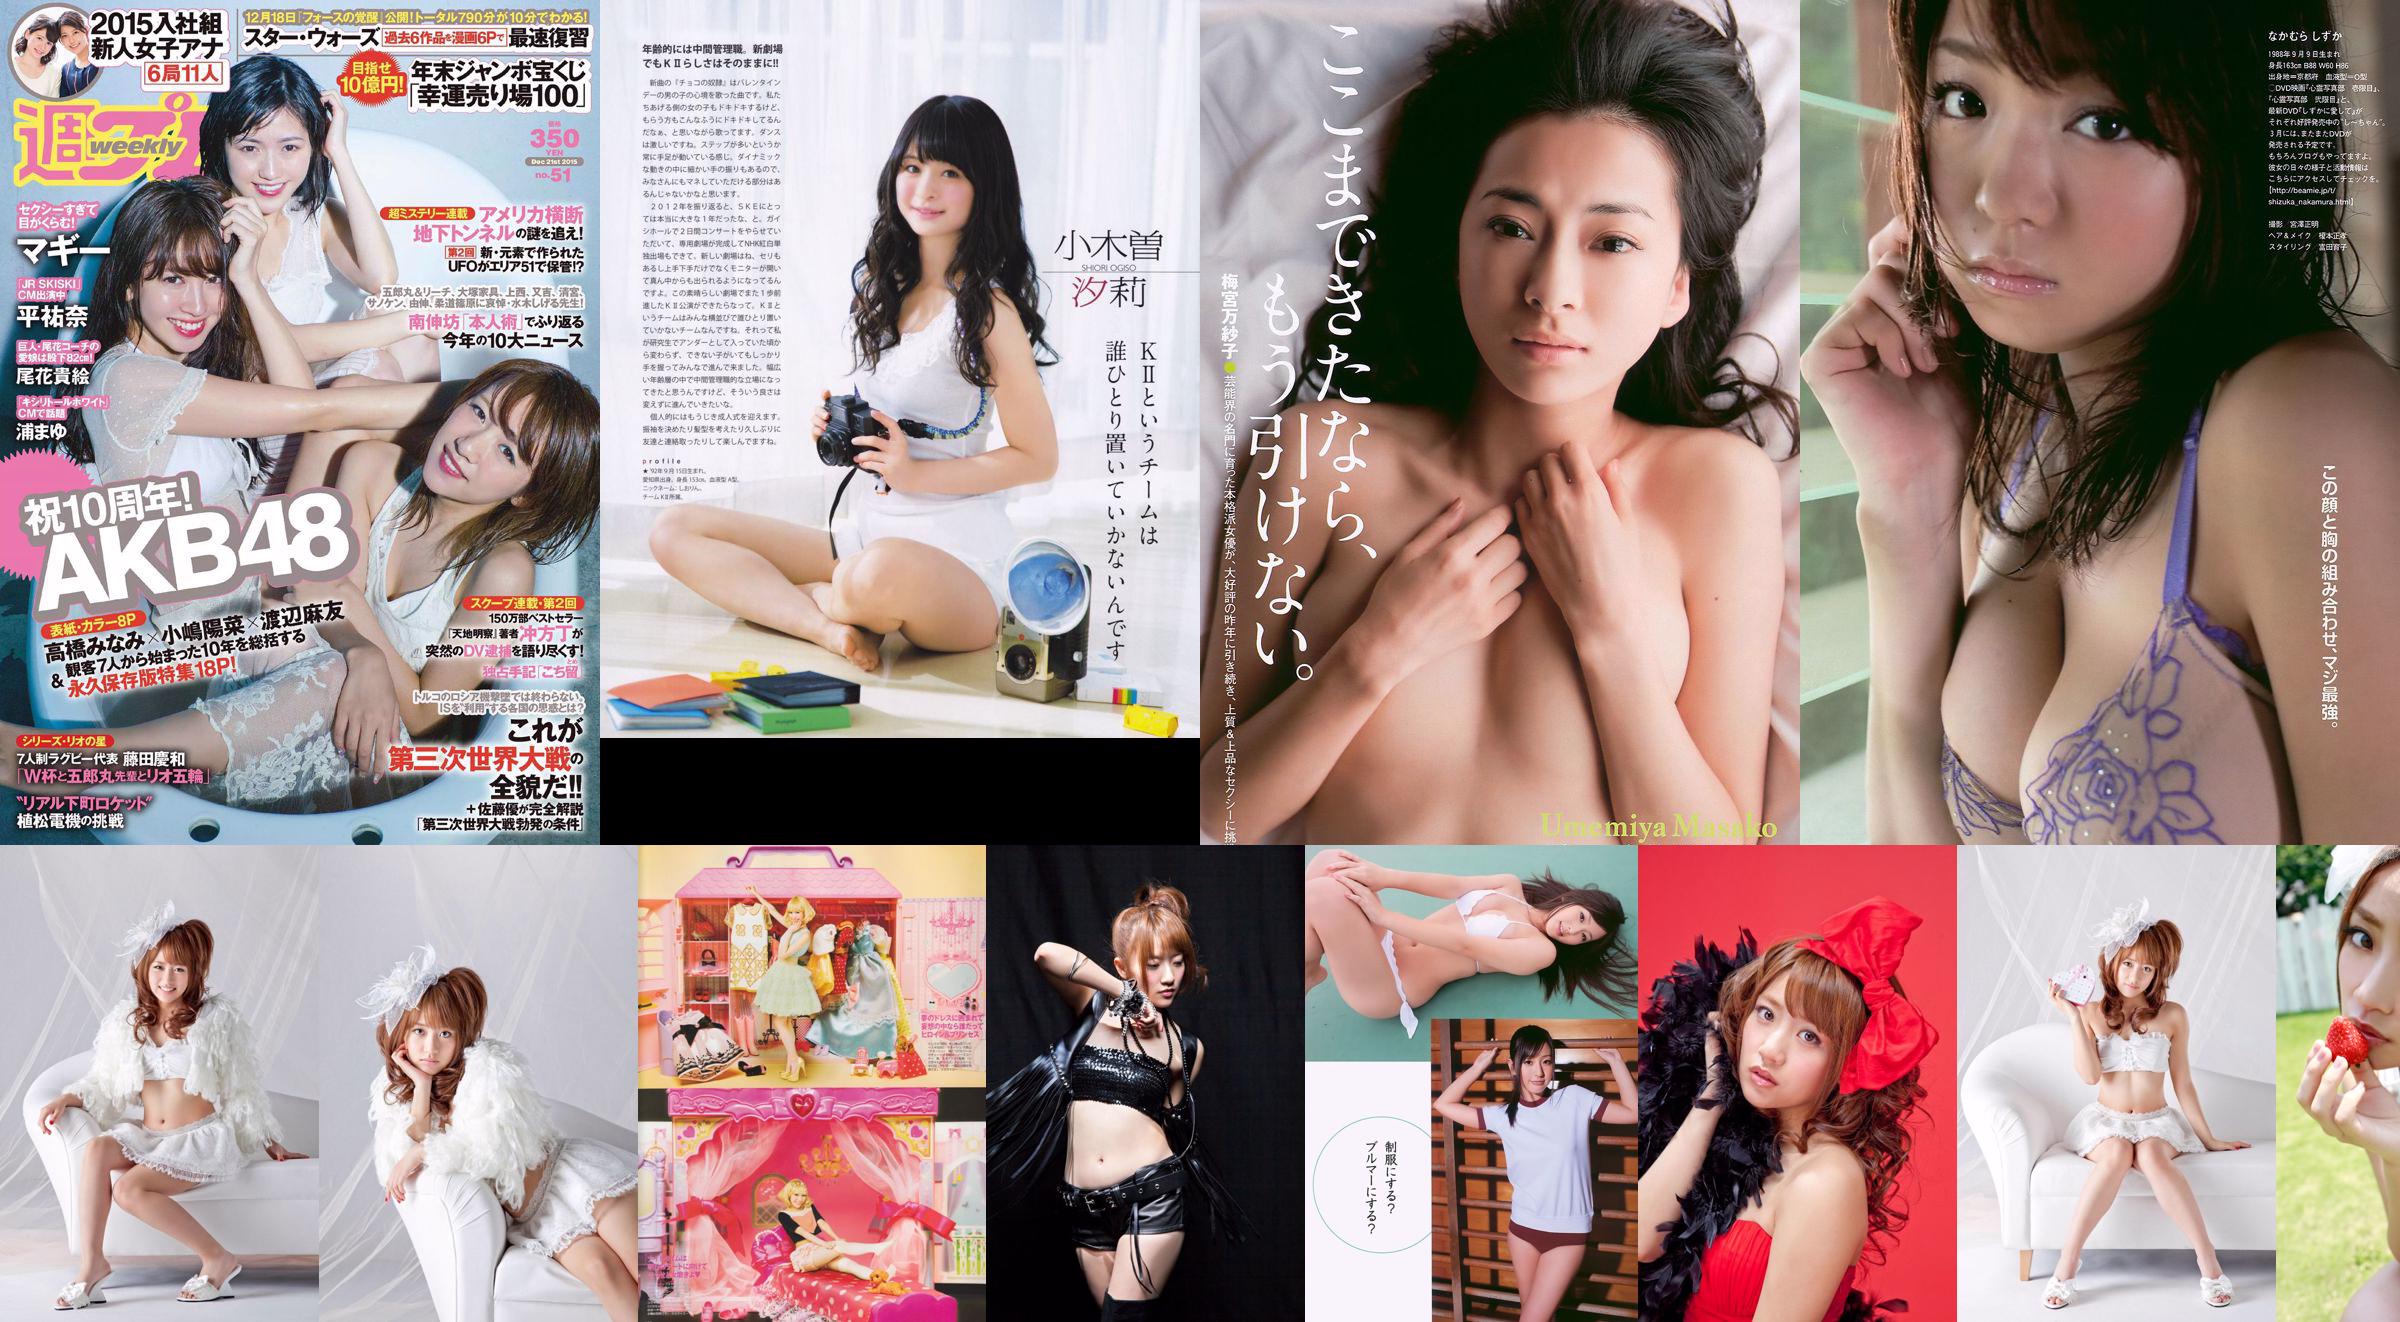 Minami Takahashi / Minami Takahashi << Kleine reuzen >> [YS Web] Vol.469 No.122050 Pagina 1